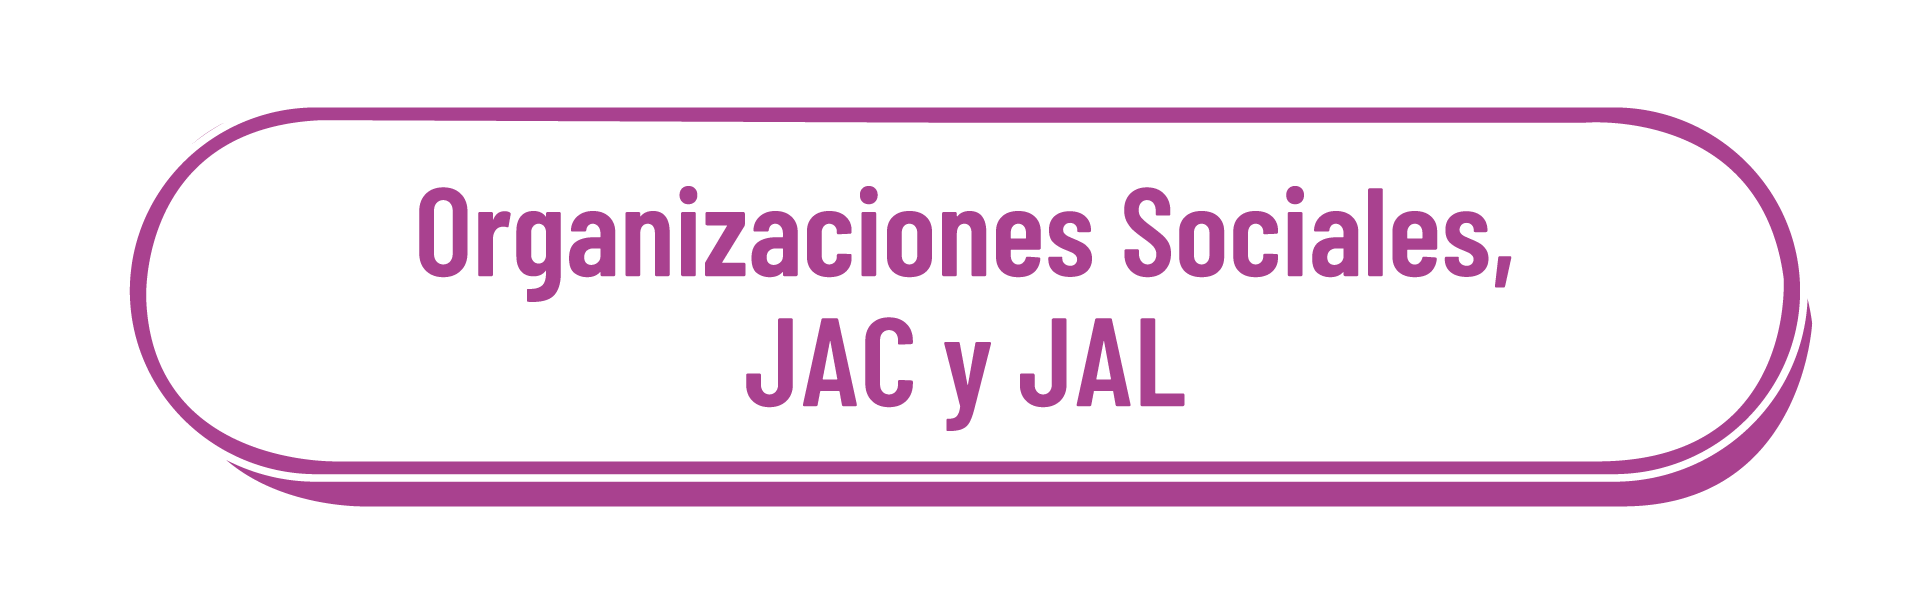 Organizaciones sociales, JAC y JAL